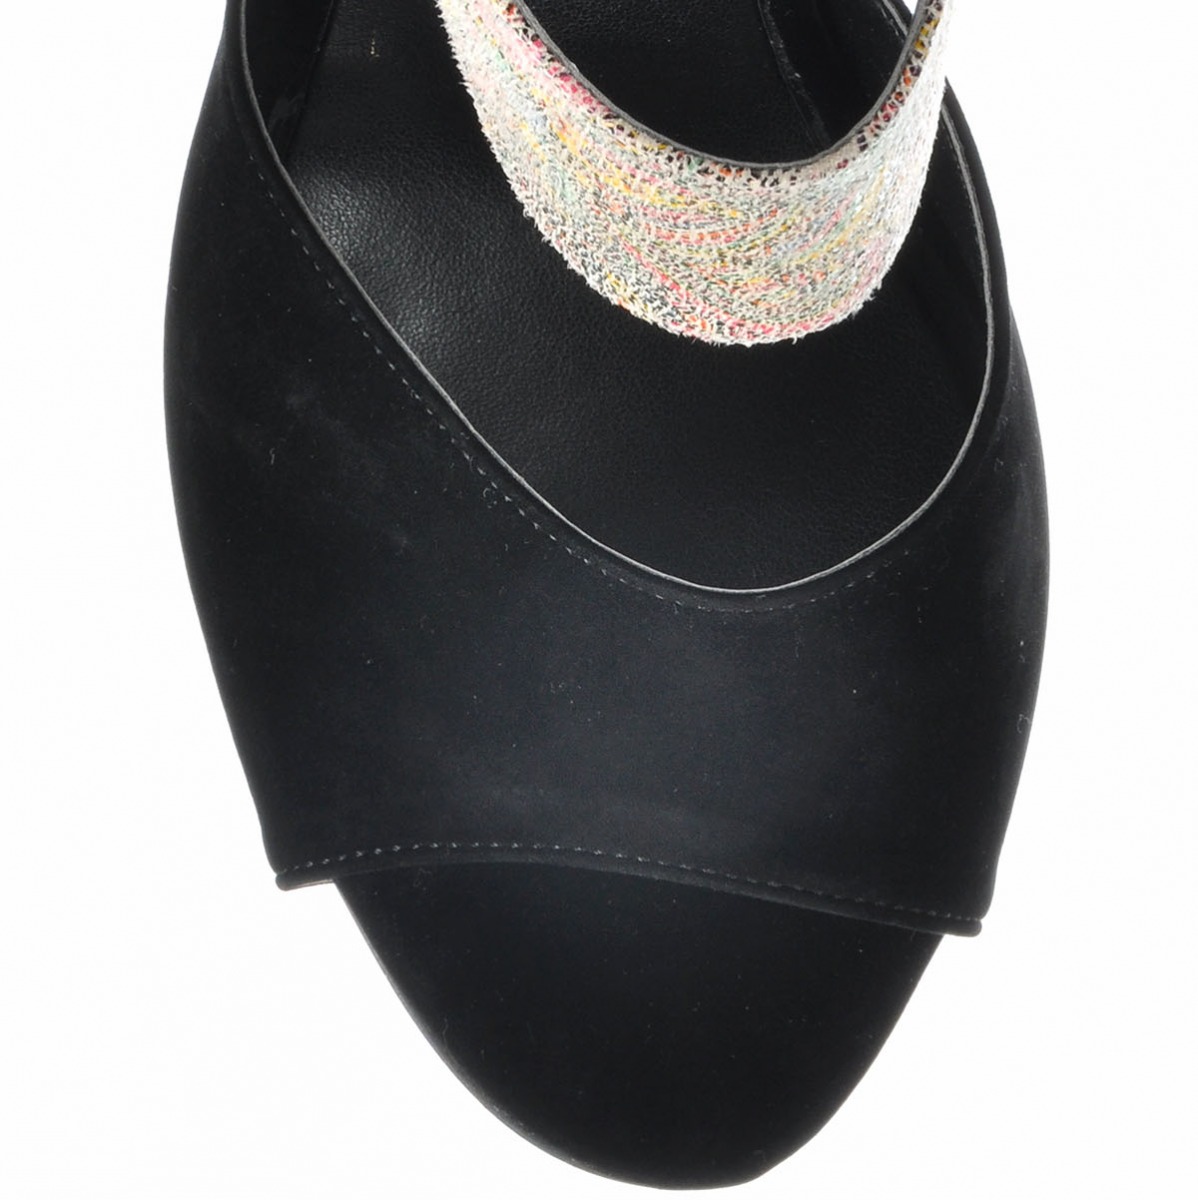 Flo Kadın  Siyah-Süet Klasik Topuklu Ayakkabı VZN-188Y. 4